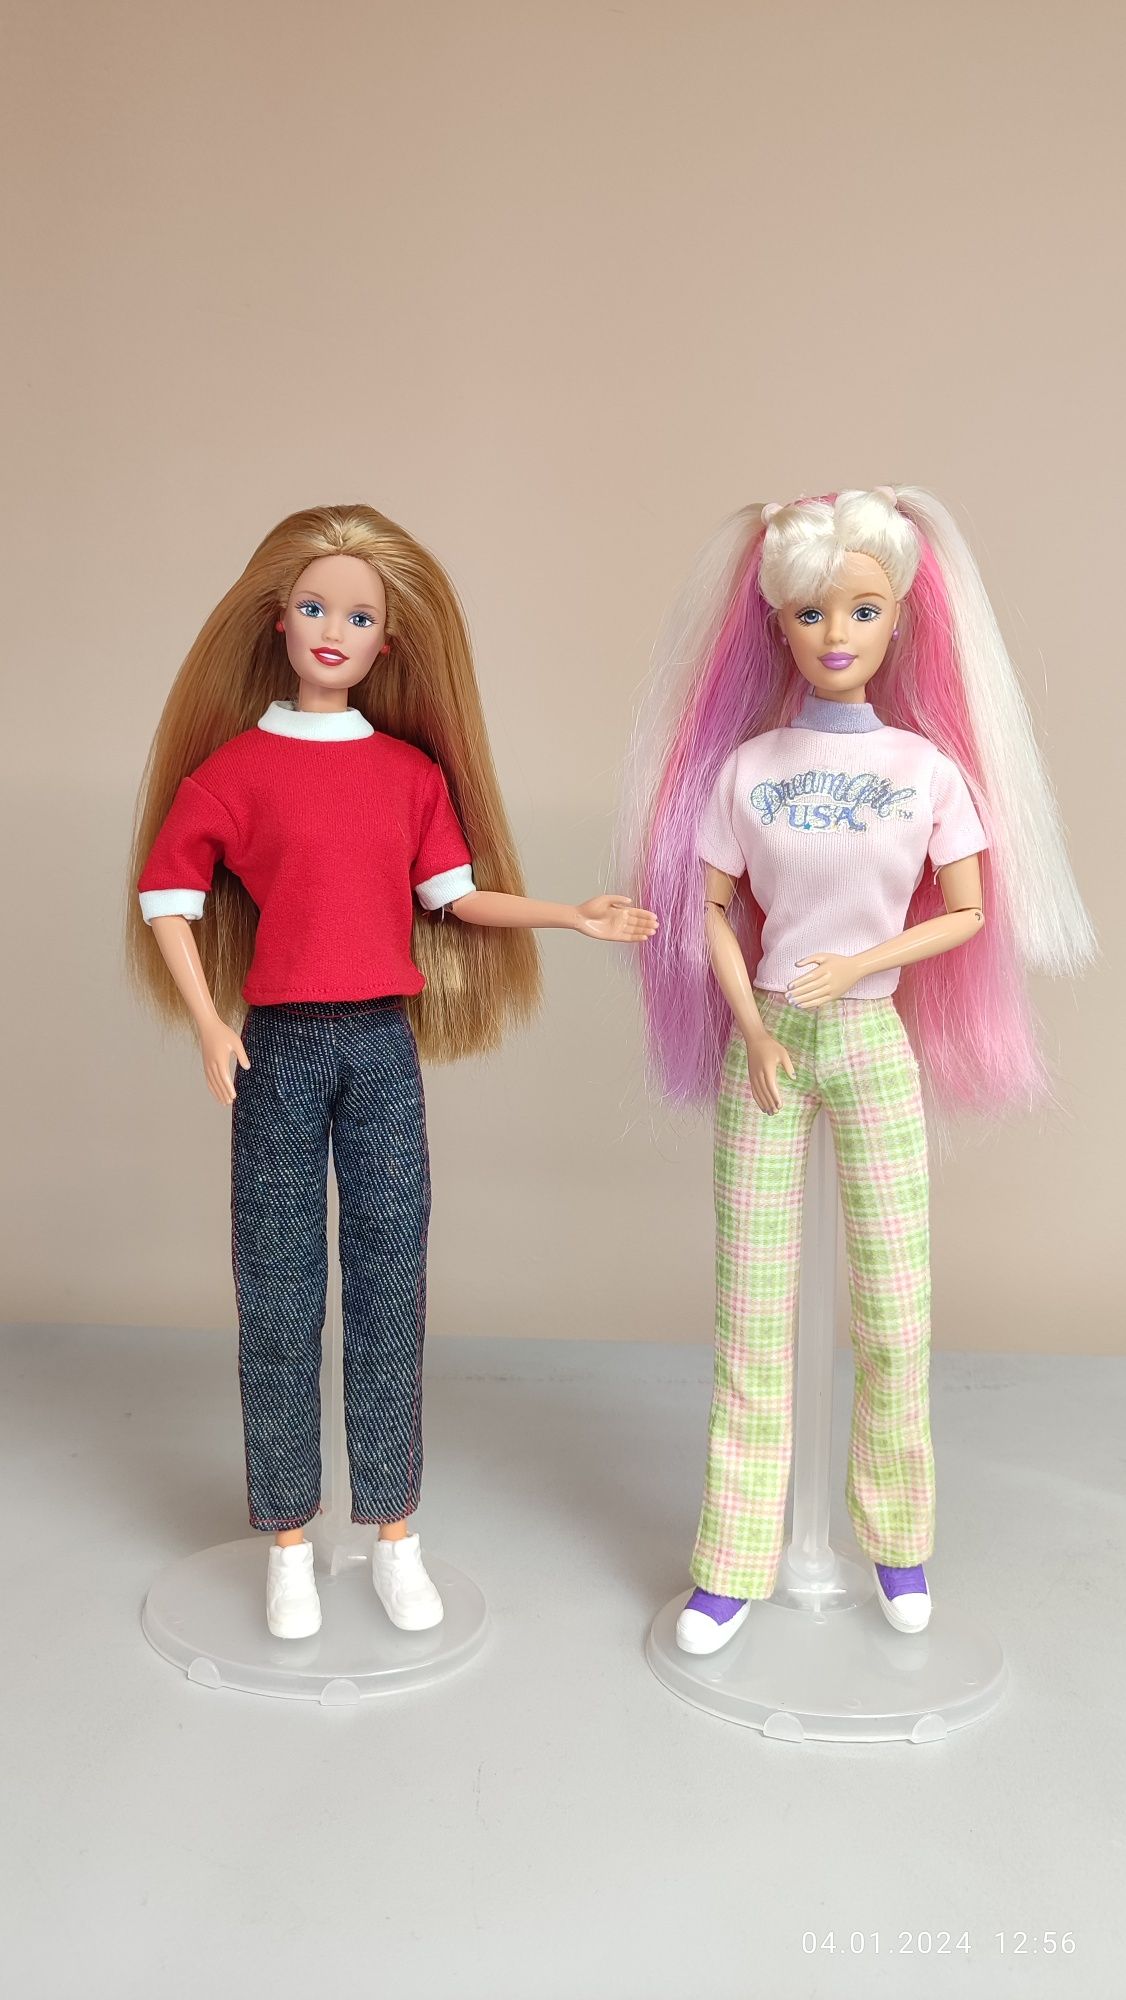 Коллекционные куклы Барби 1998 года